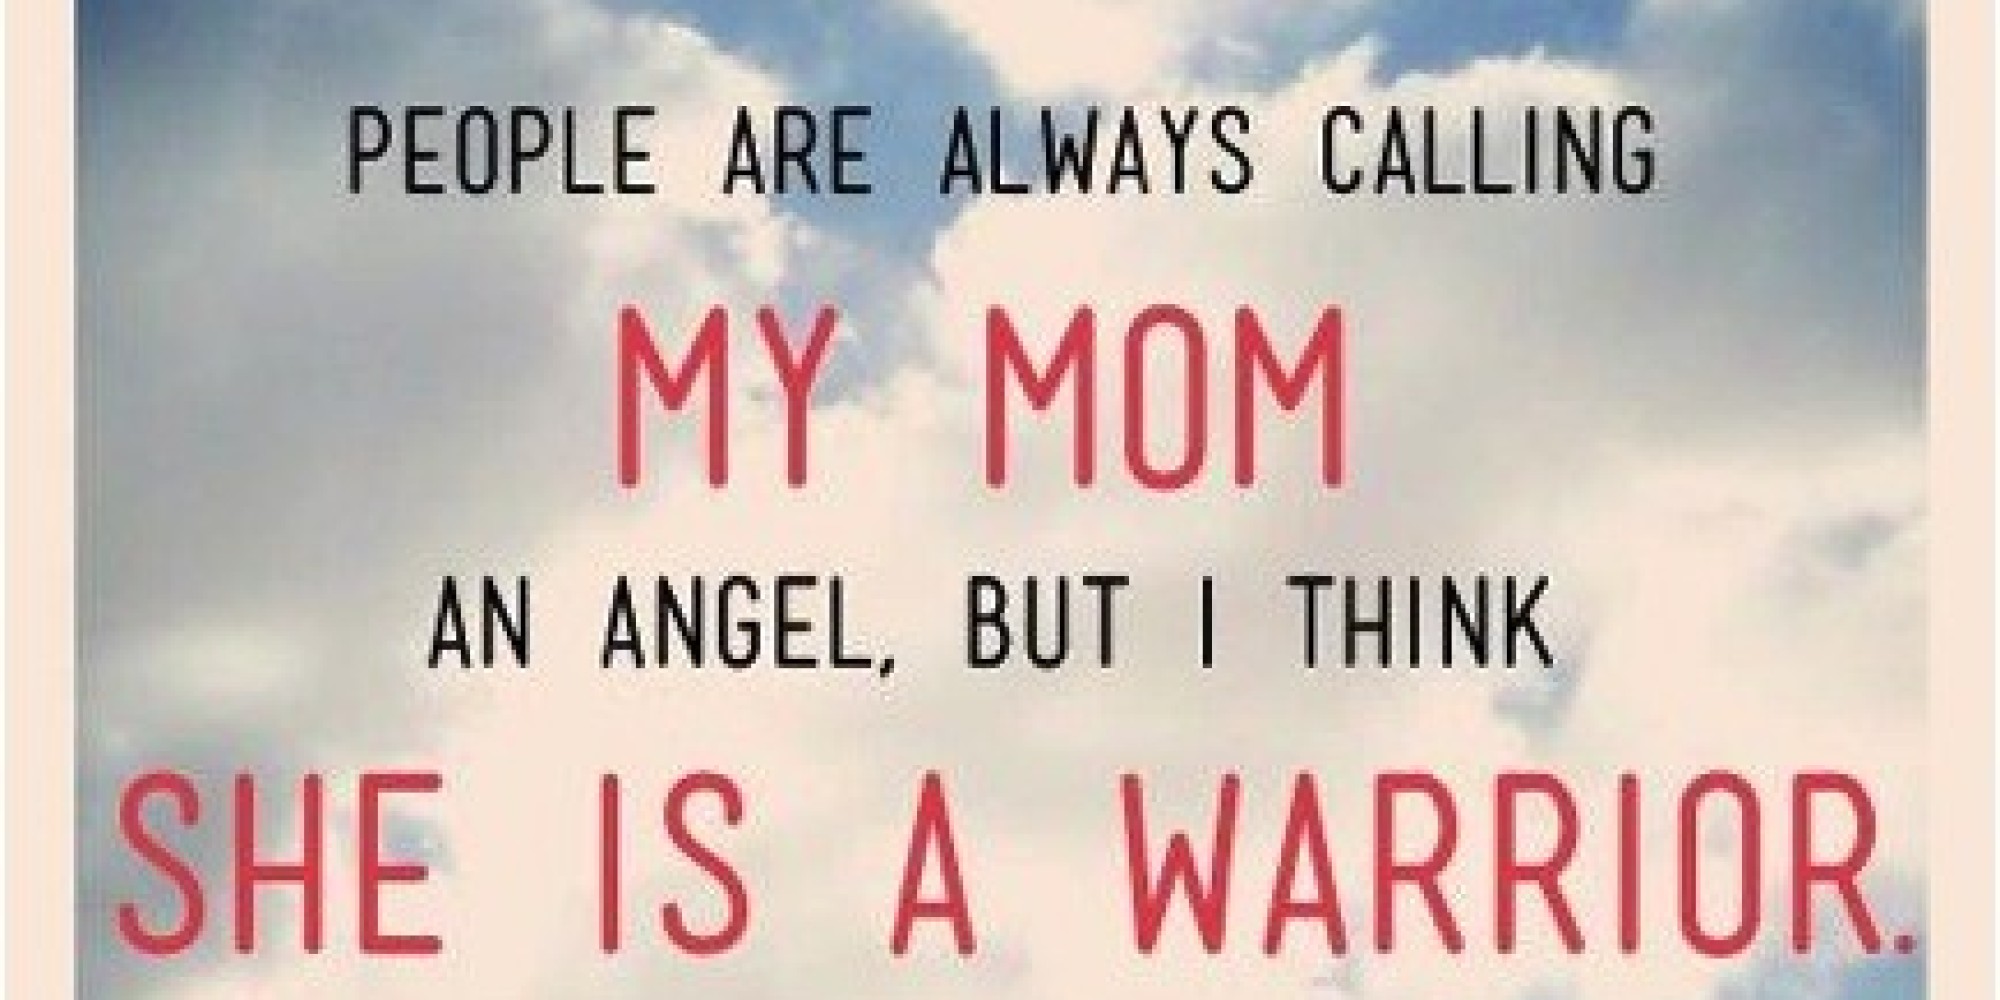 my hero is my mom essay - Wunderlist